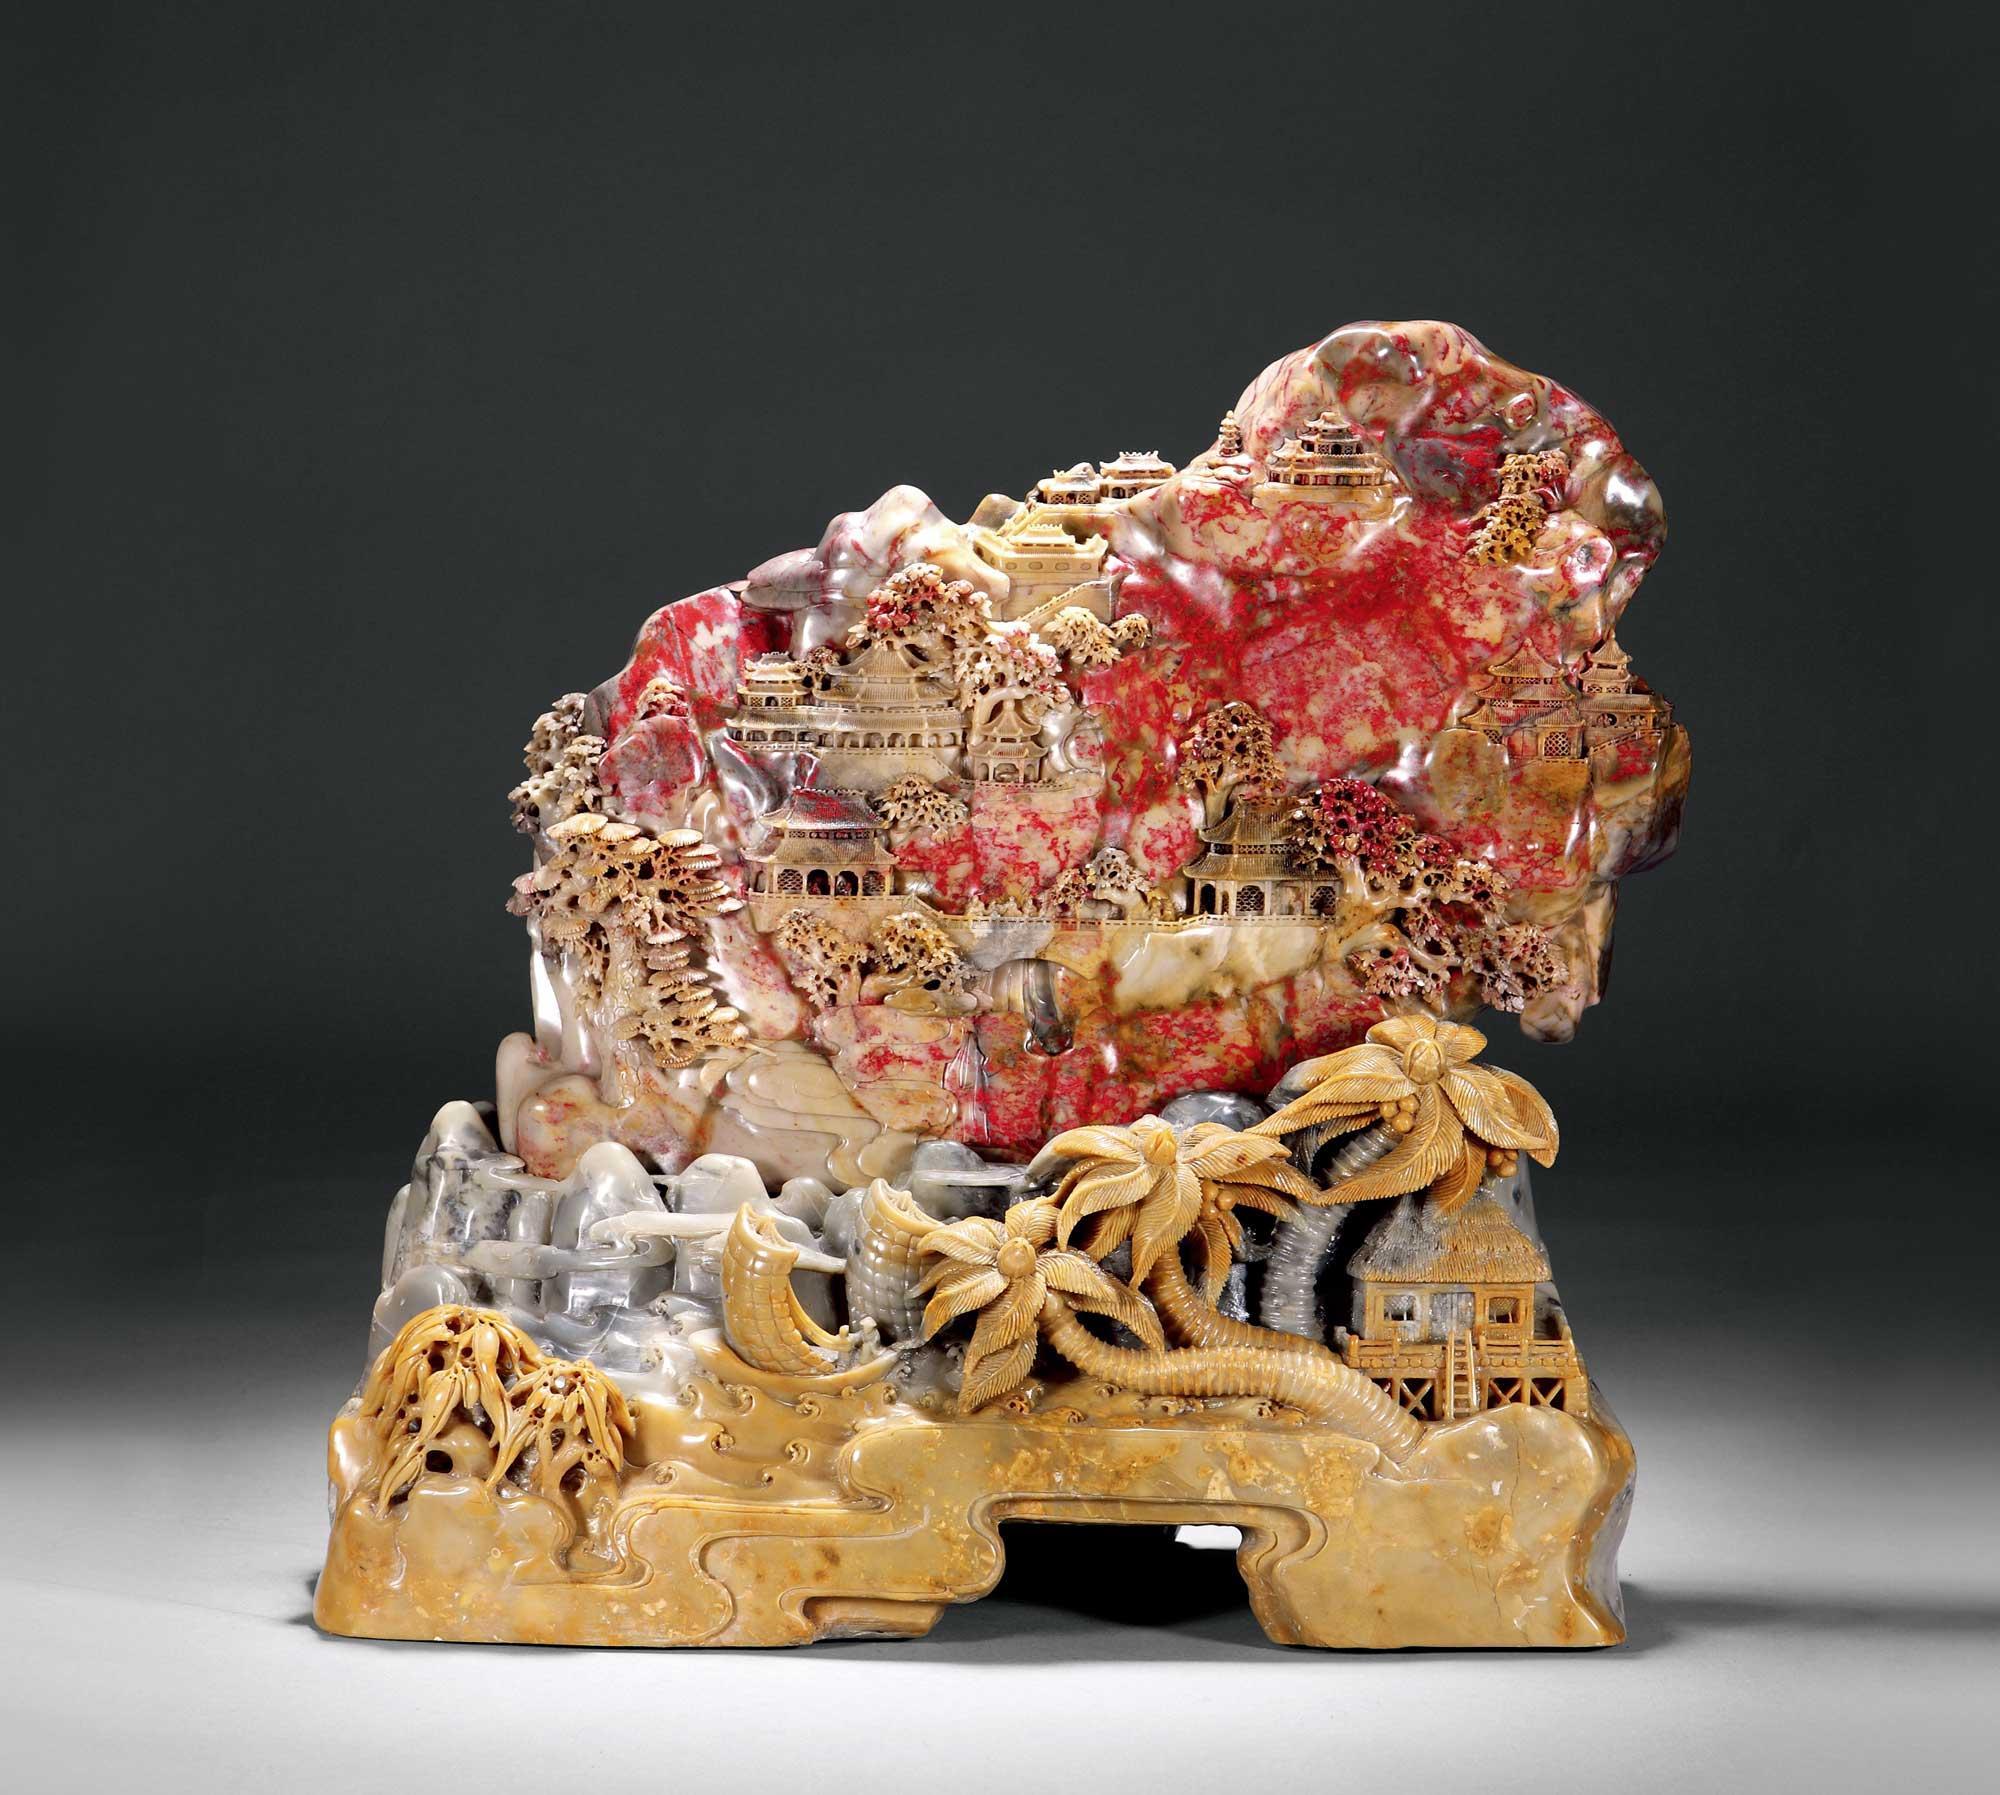 昌化鸡血石雕刻作品《雕楼阁山子》卖1344万,为什么这么值钱?